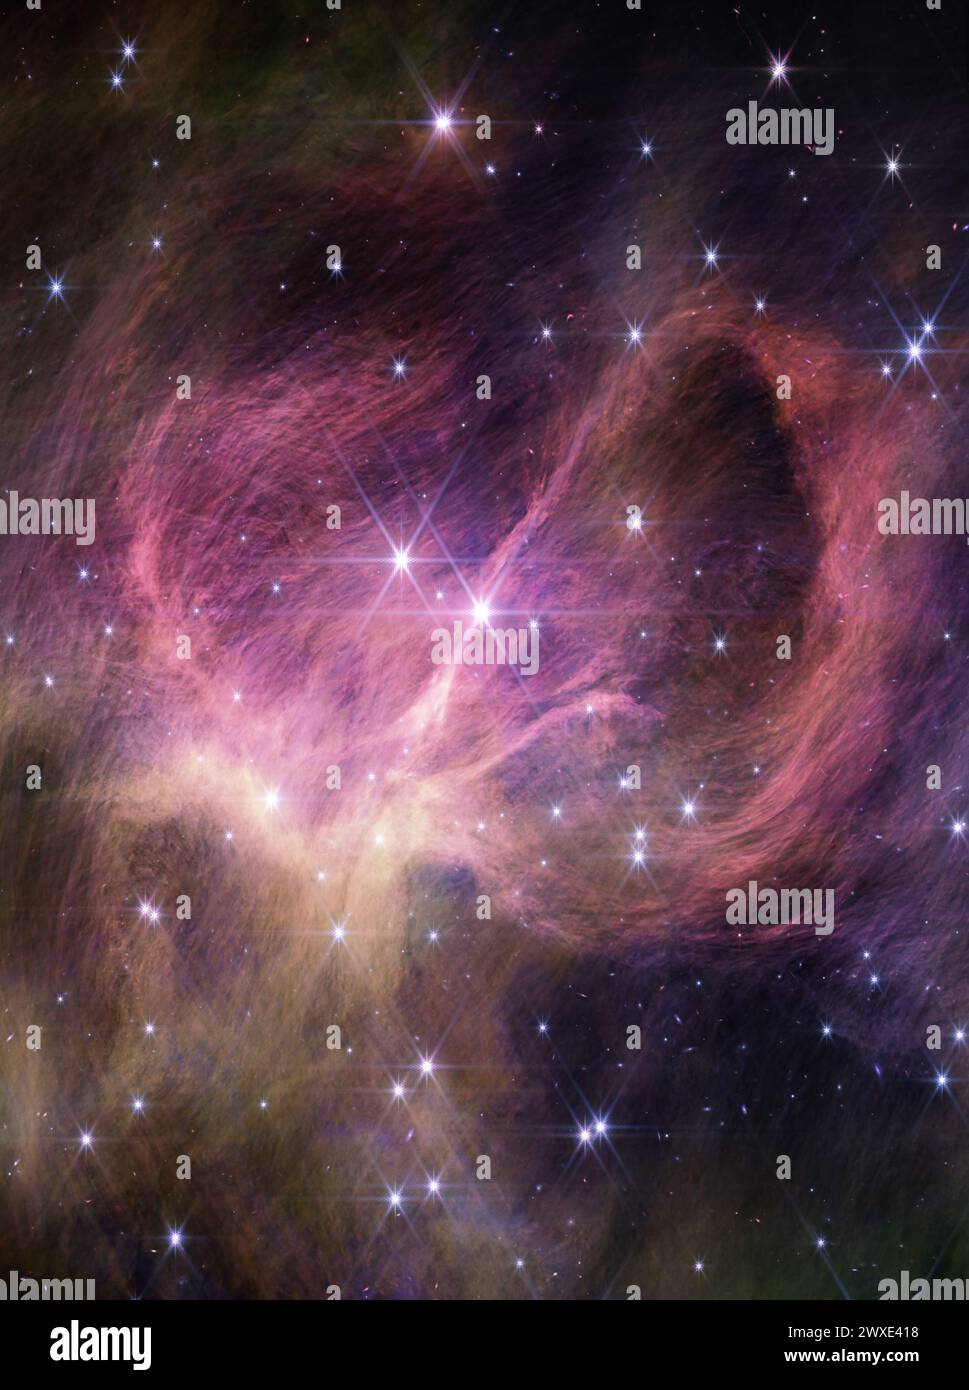 Dieses Bild des NIRCam-Instruments am James Webb Space Telescope der NASA zeigt den zentralen Teil des Sternhaufens IC 348. Die schroffen Vorhänge, die das Bild füllen, sind interstellares Material, das das Licht der Sterne des Sternhaufens reflektiert – was als Reflexionsnebel bekannt ist. Der helle Stern, der der Mitte des Rahmens am nächsten liegt, ist ein Paar von Typ-B-Sternen in einem Doppelsystem, die die massereichsten Sterne im Sternhaufen sind. Zwei prominente, helle Sterne nahe der Bildmitte zeigen Webbs Achtpunkt-Beugungsspitzen. Quelle: NASA Stockfoto